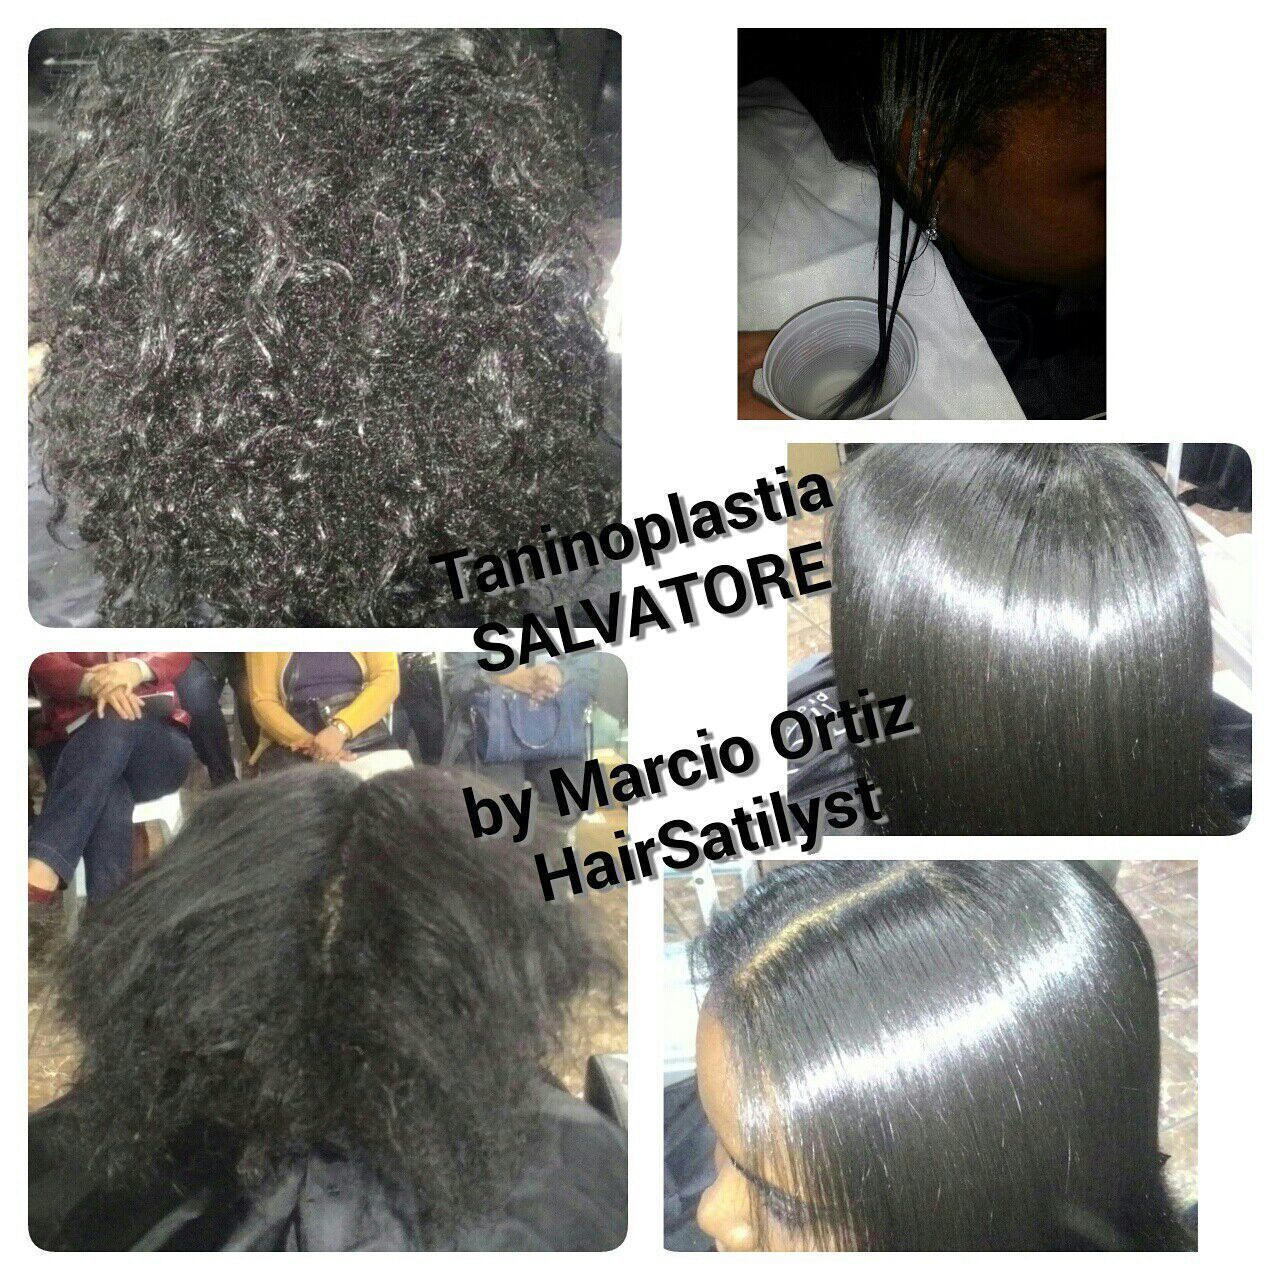 De hj. Curso top sobre taninoplastia, para profissionais de Sorocaba - SP. cabelo cabeleireiro(a) gerente